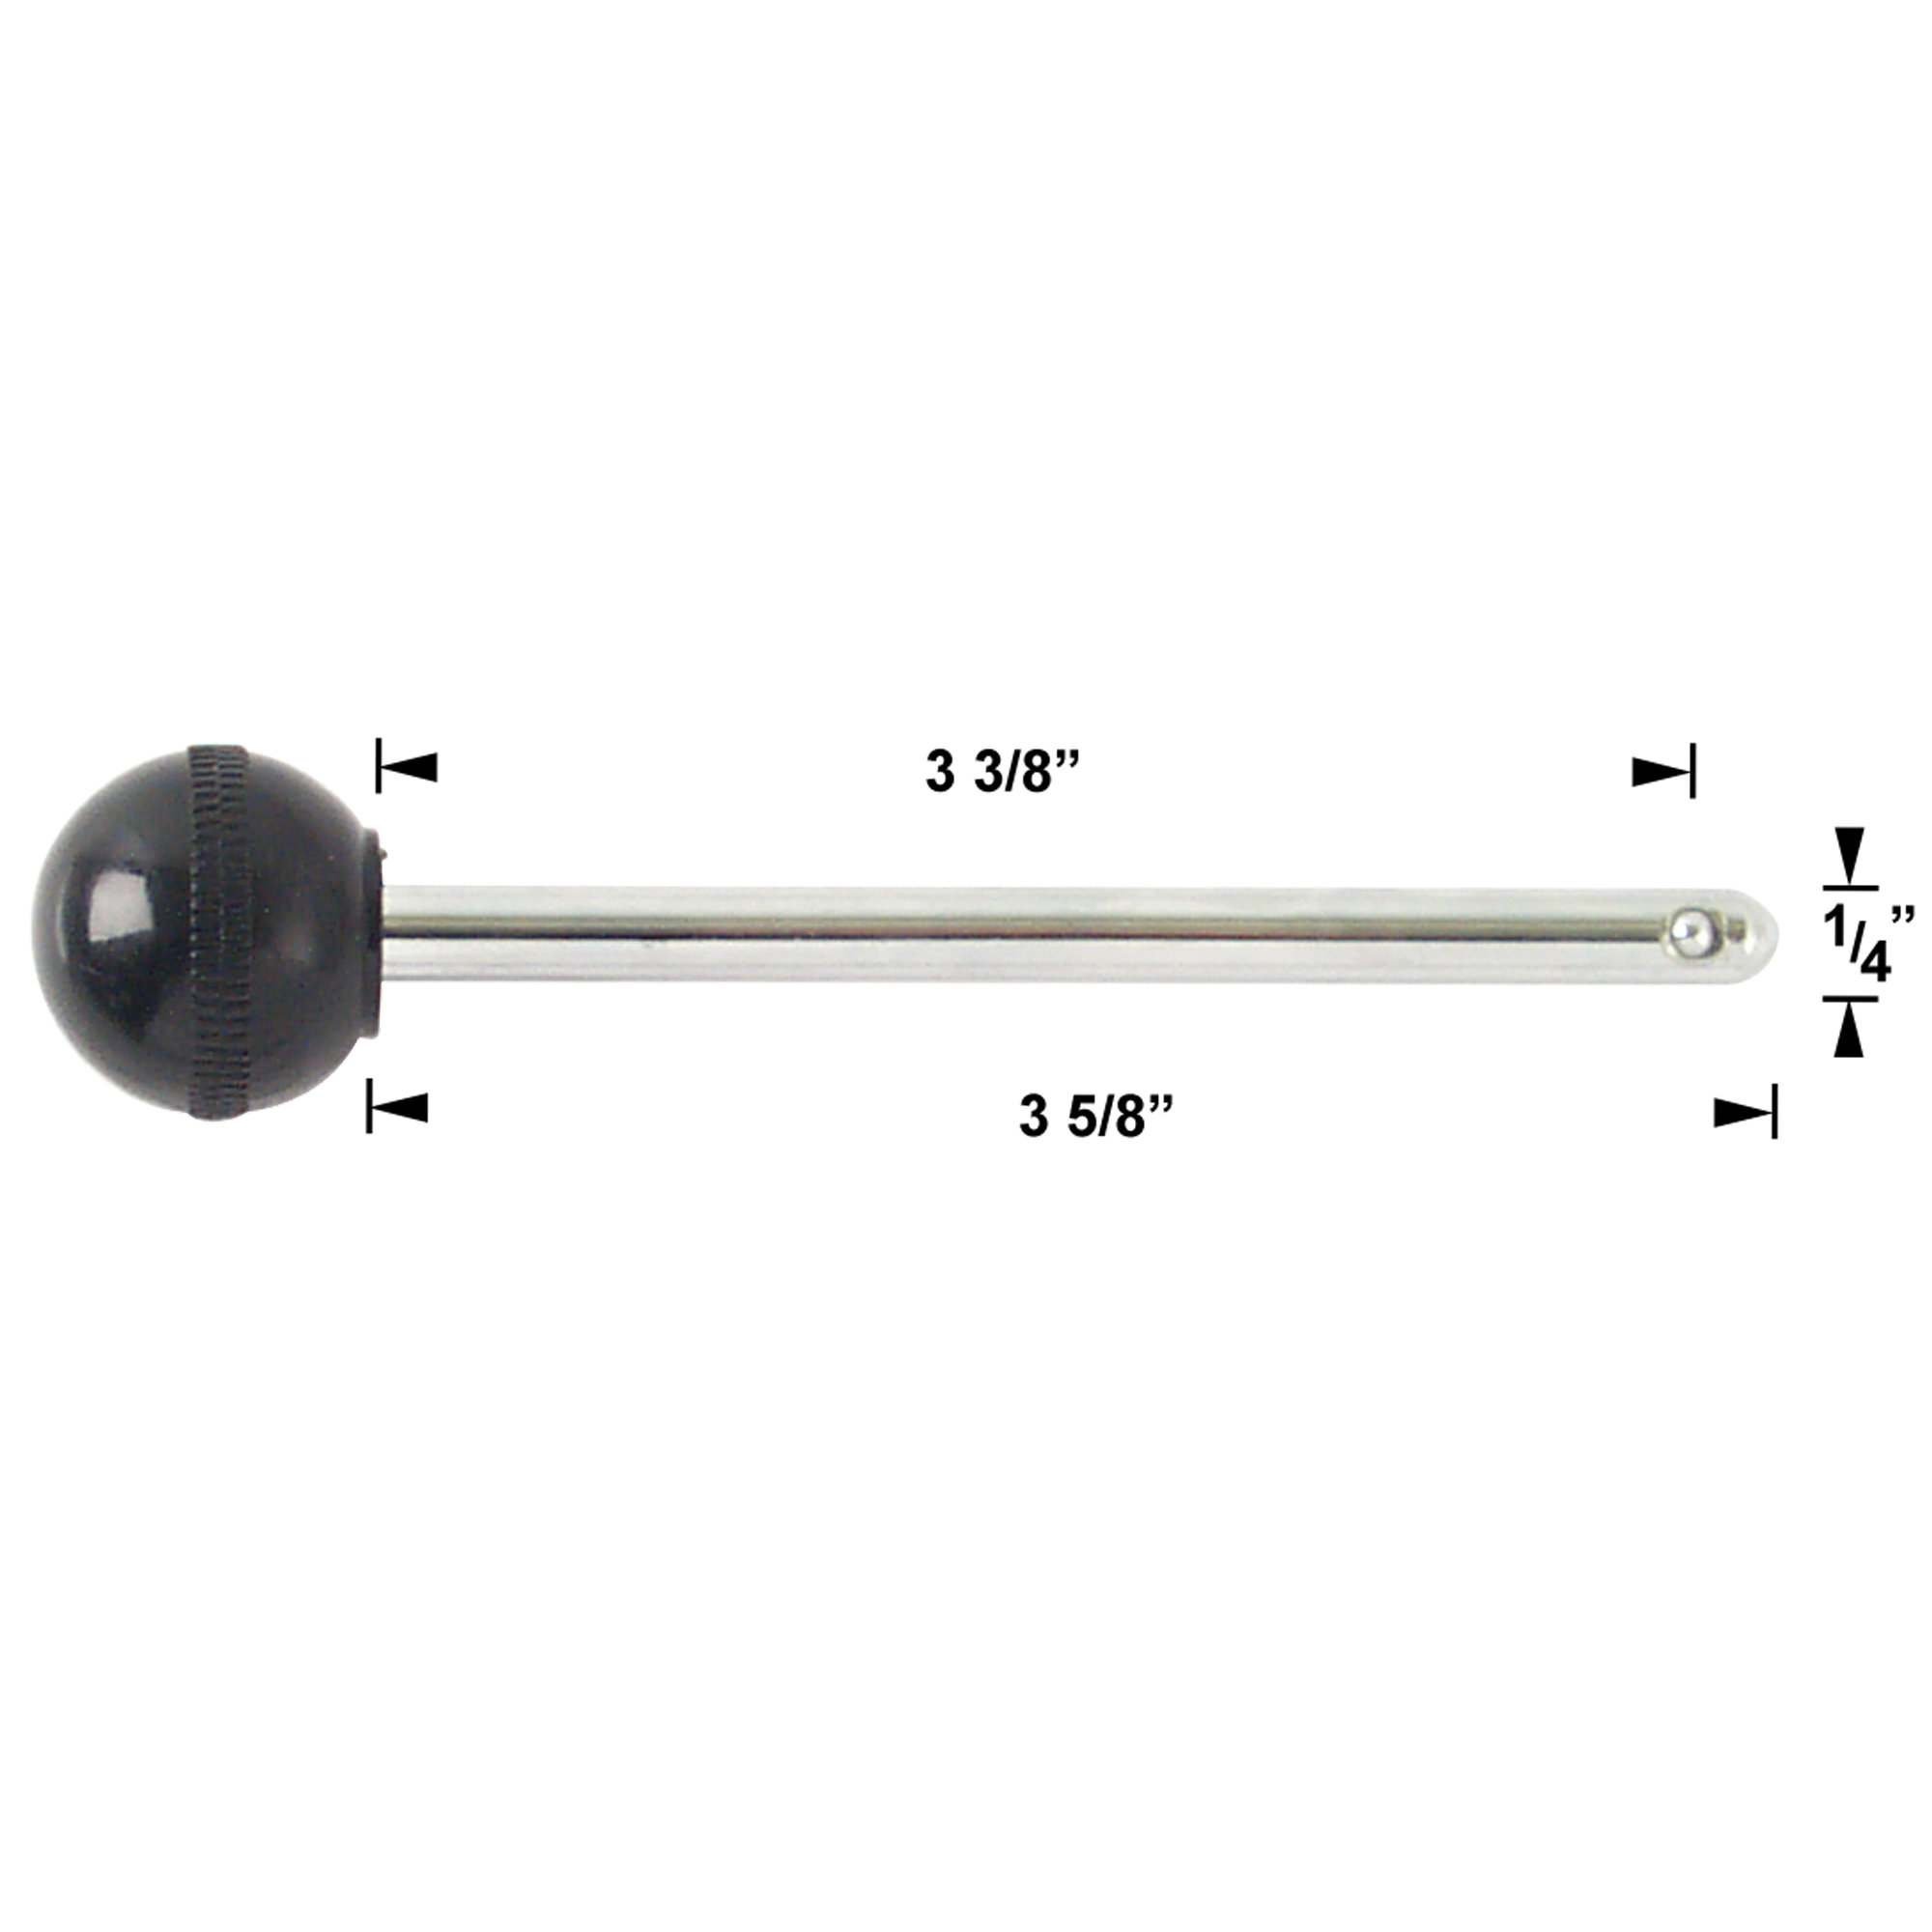 Selector Pin, 3-3/8" Locking Space, 1/4" Diameter